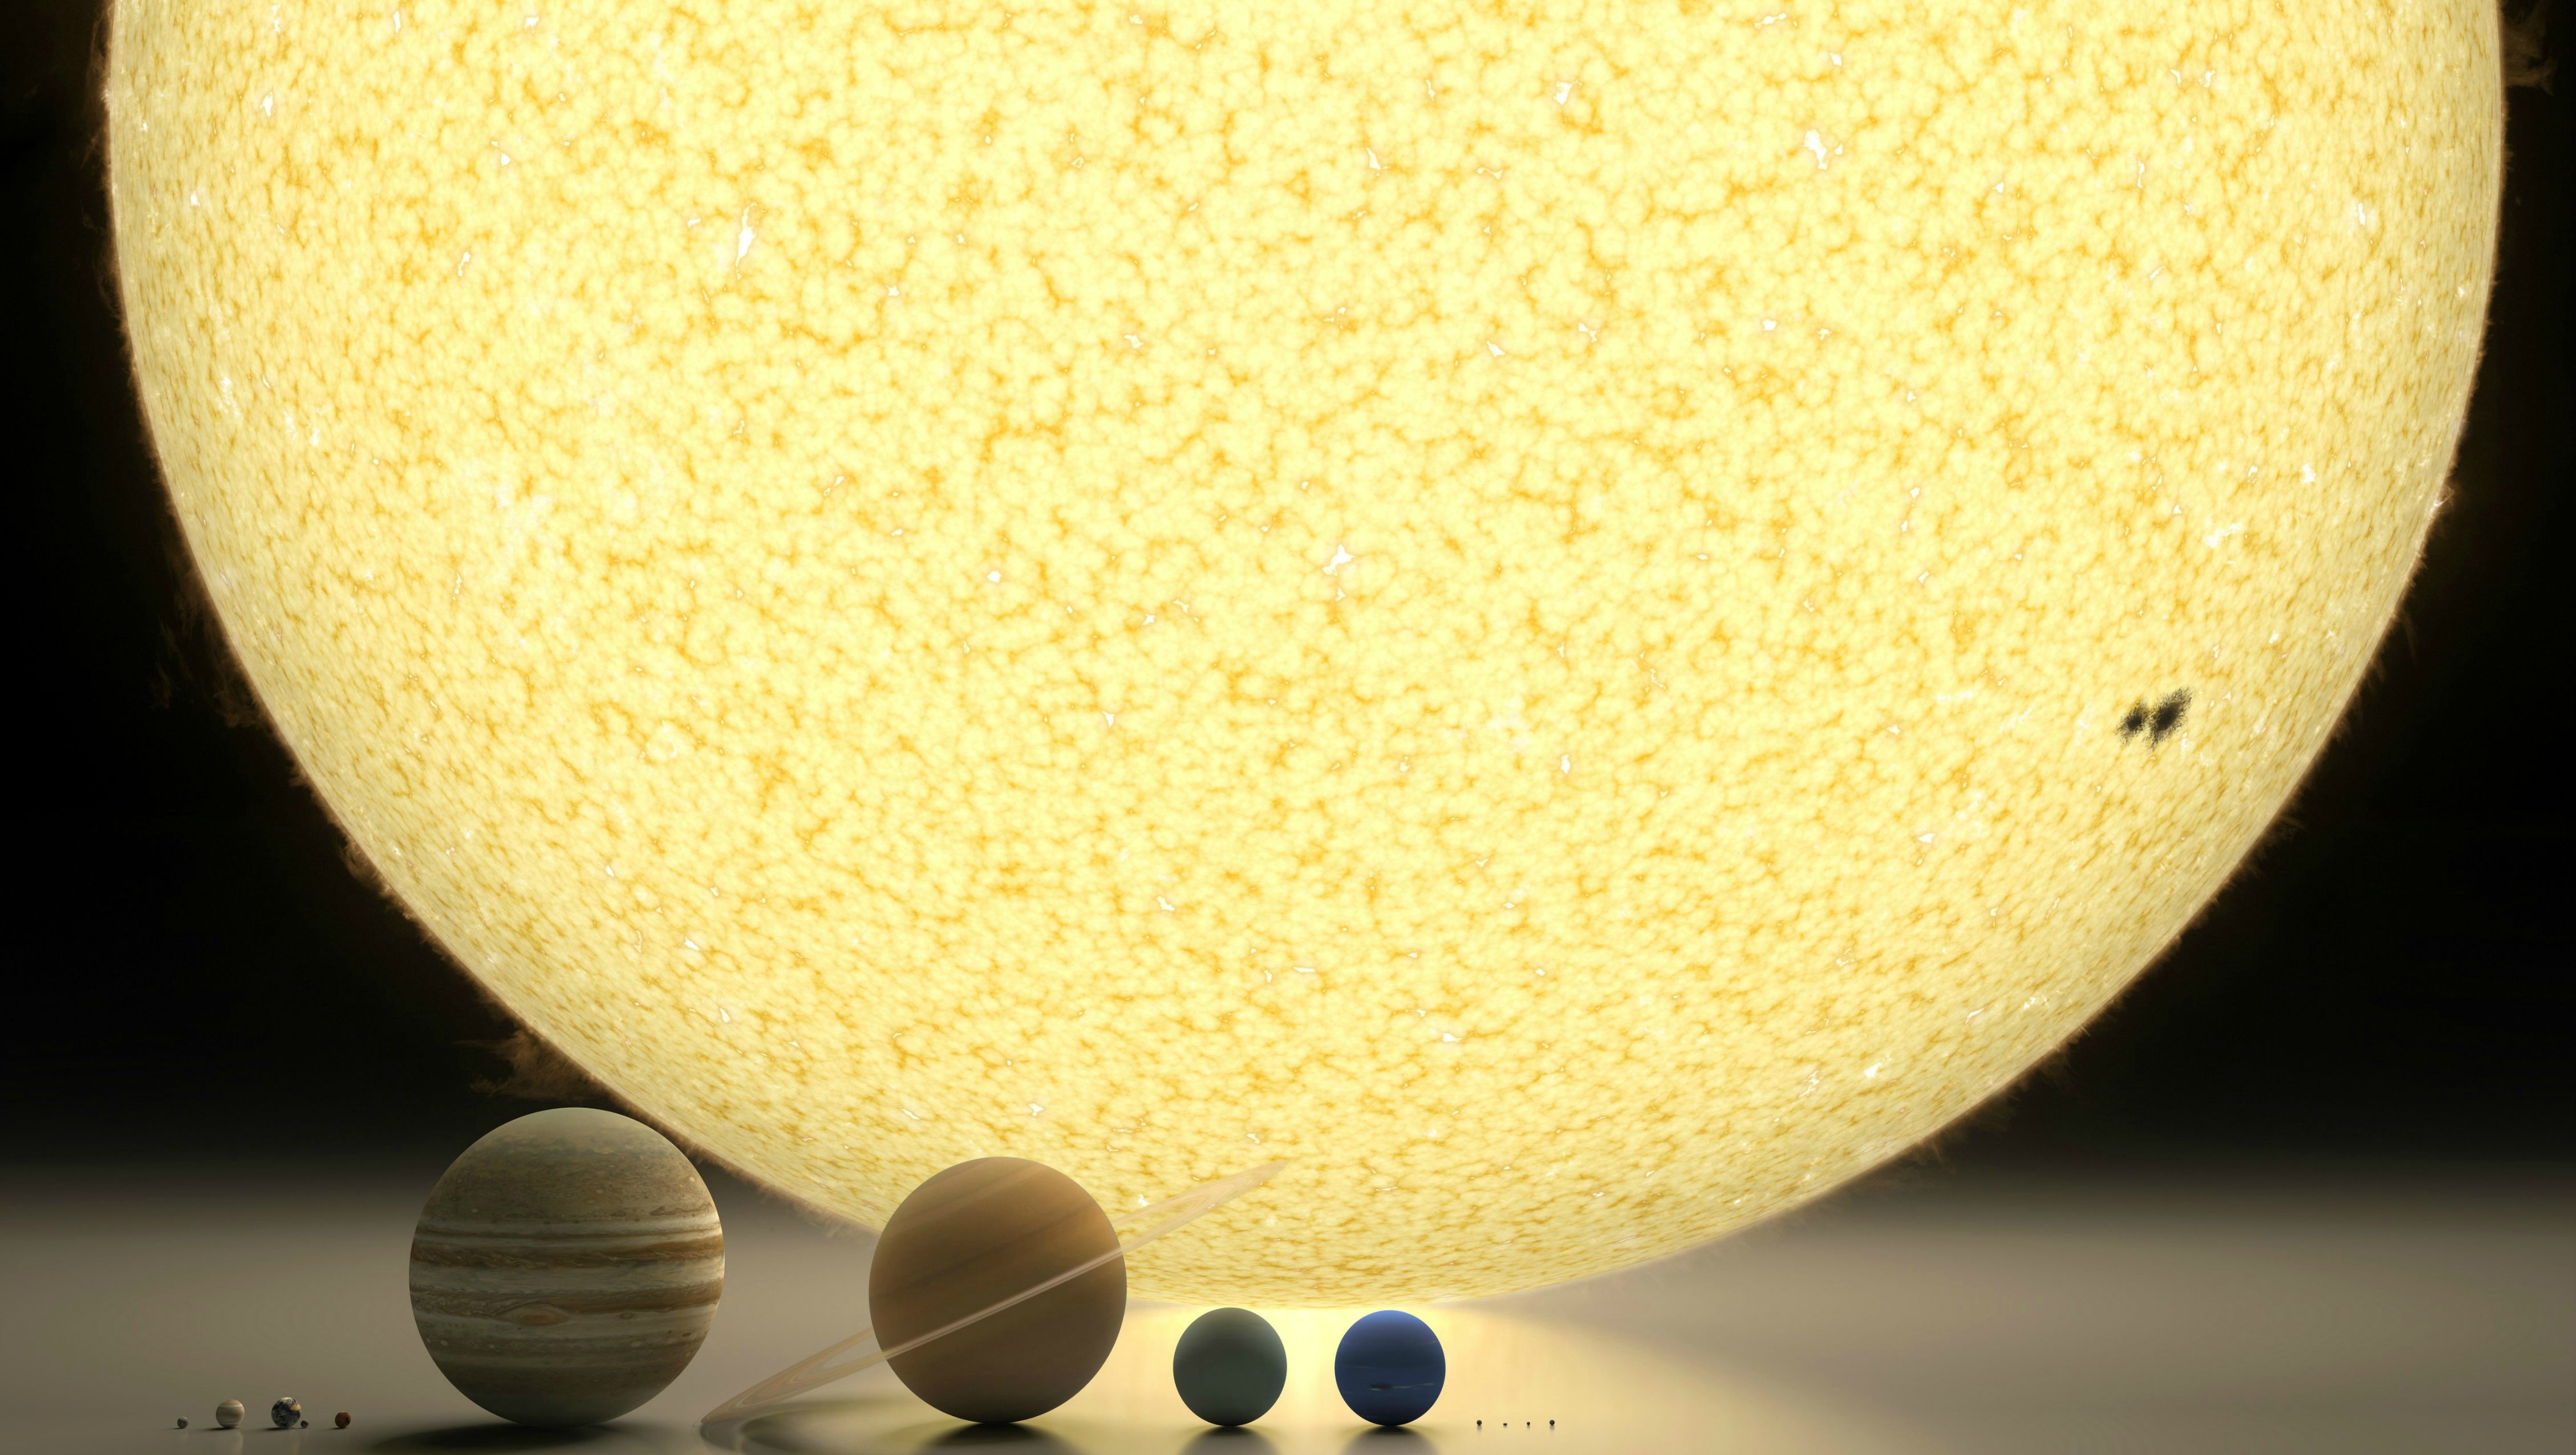 Солнце и земля одинакового размера